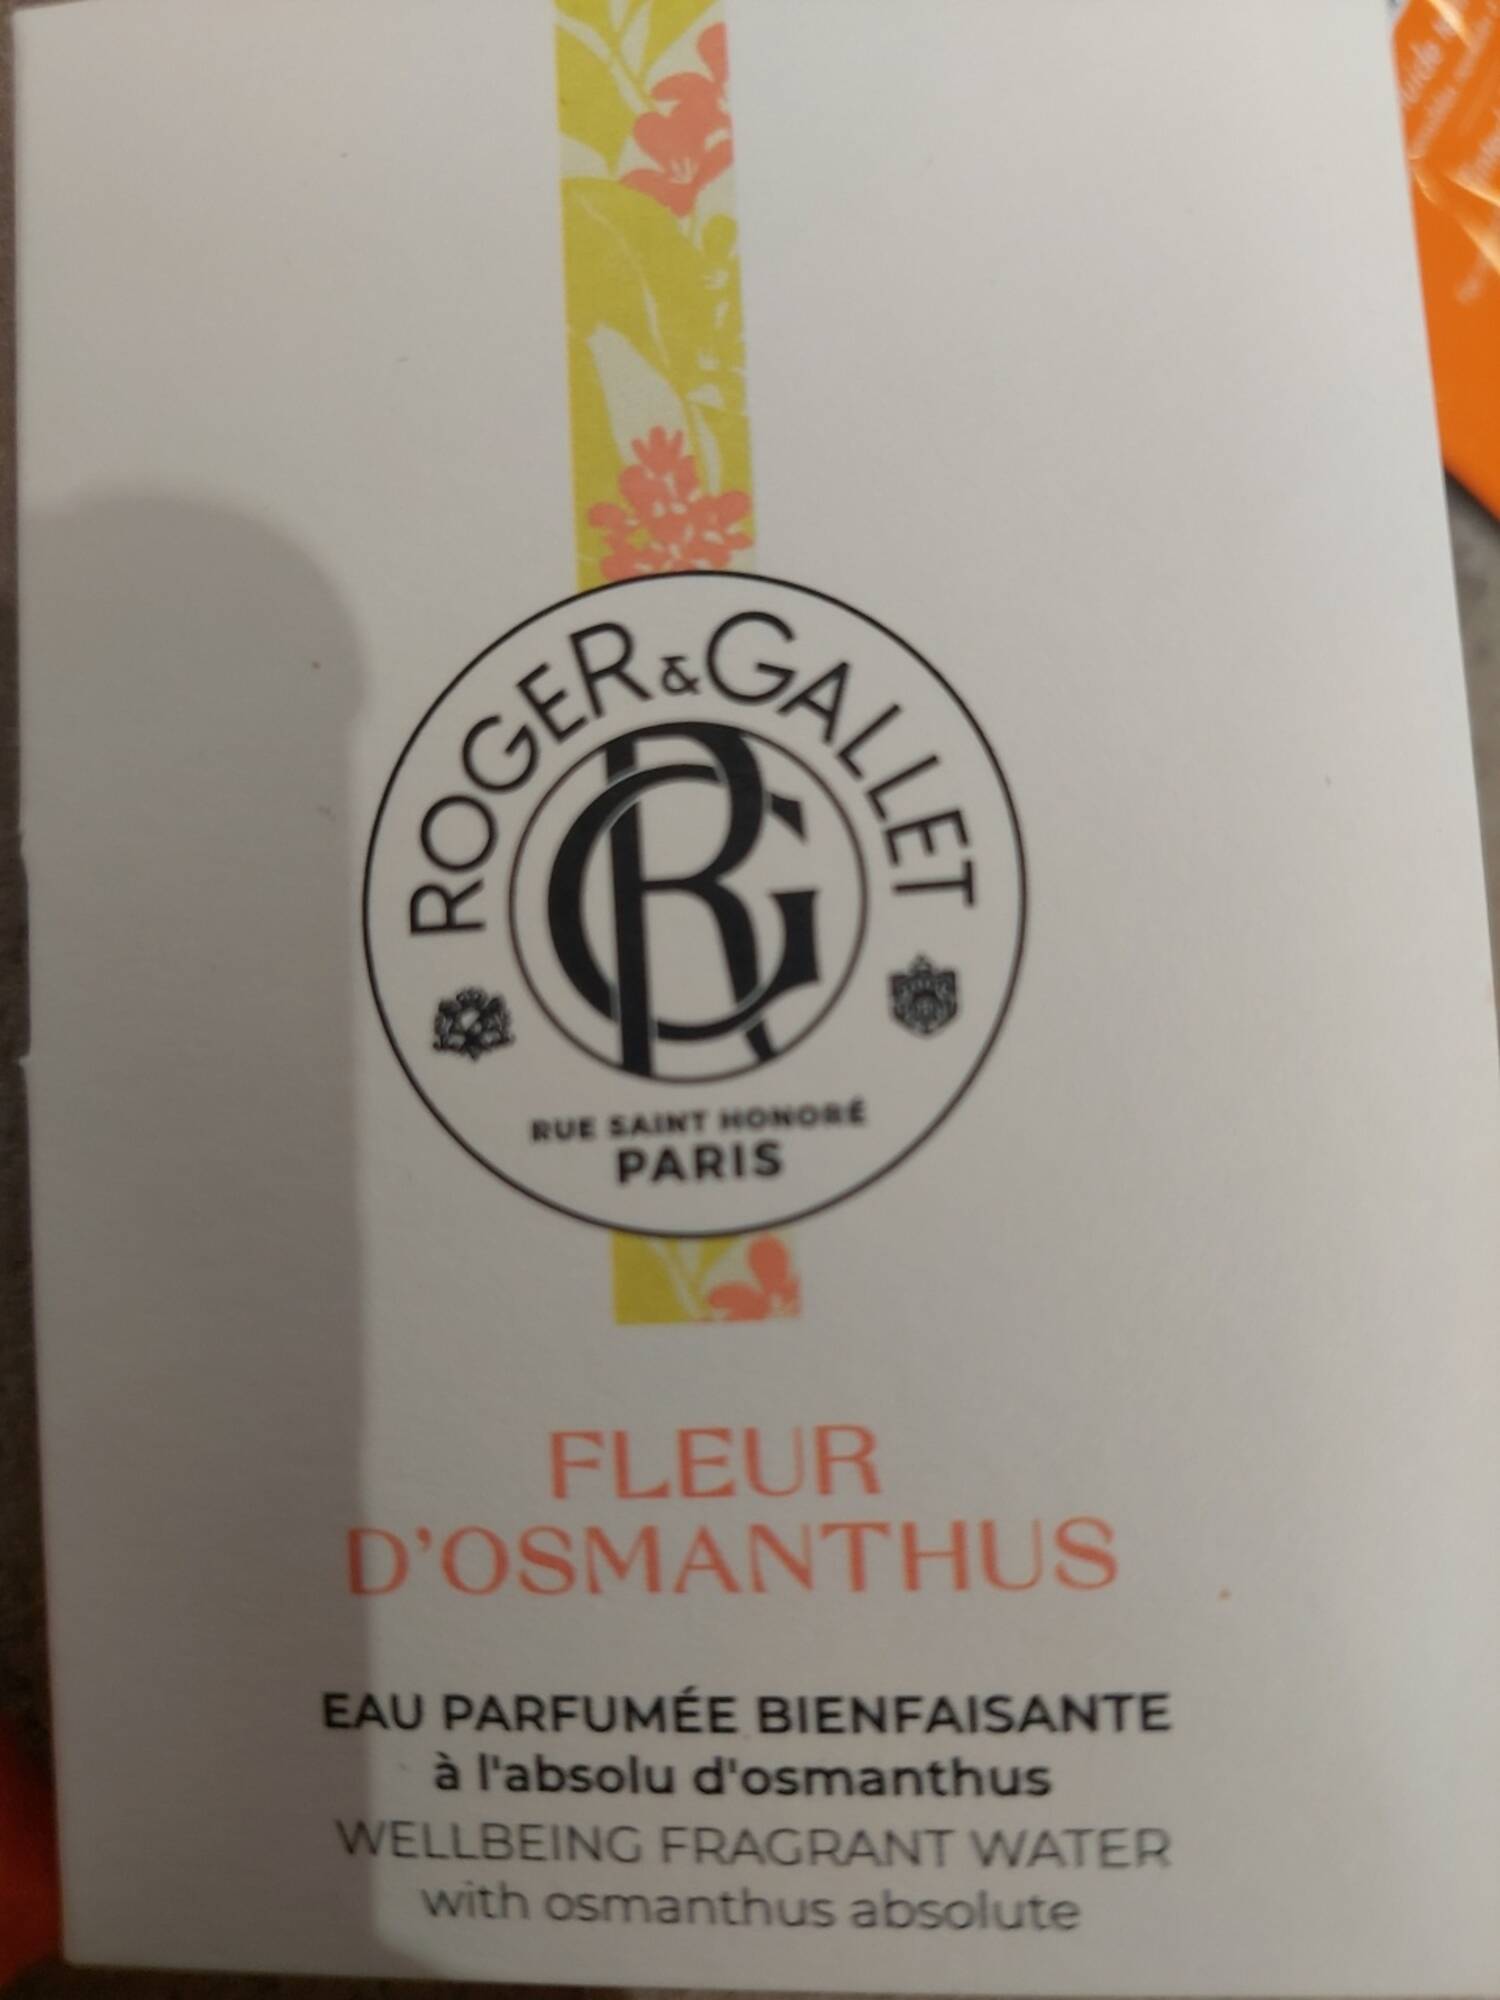 ROGER & GALLET - Fleur d'Osmanthus - Eau parfumée bienfaisante